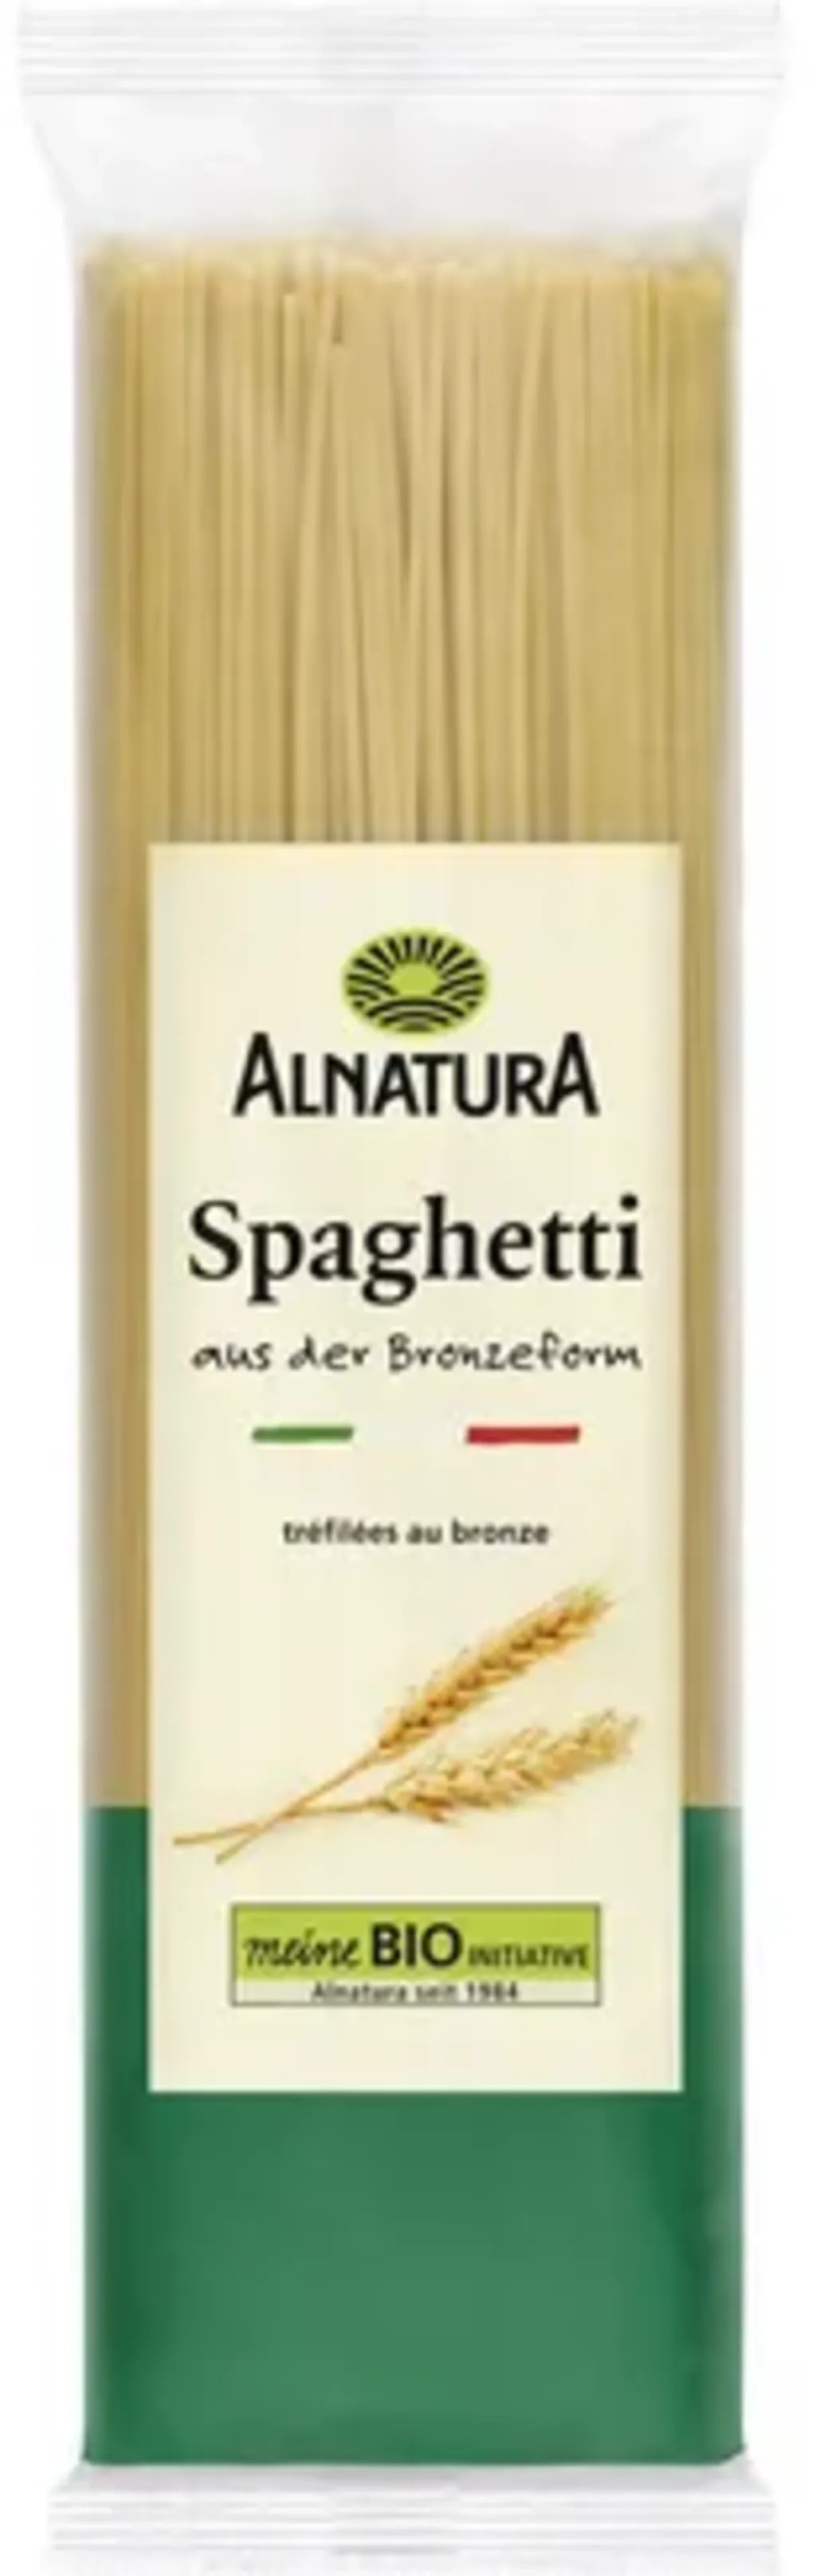 Alnatura Spaghettis